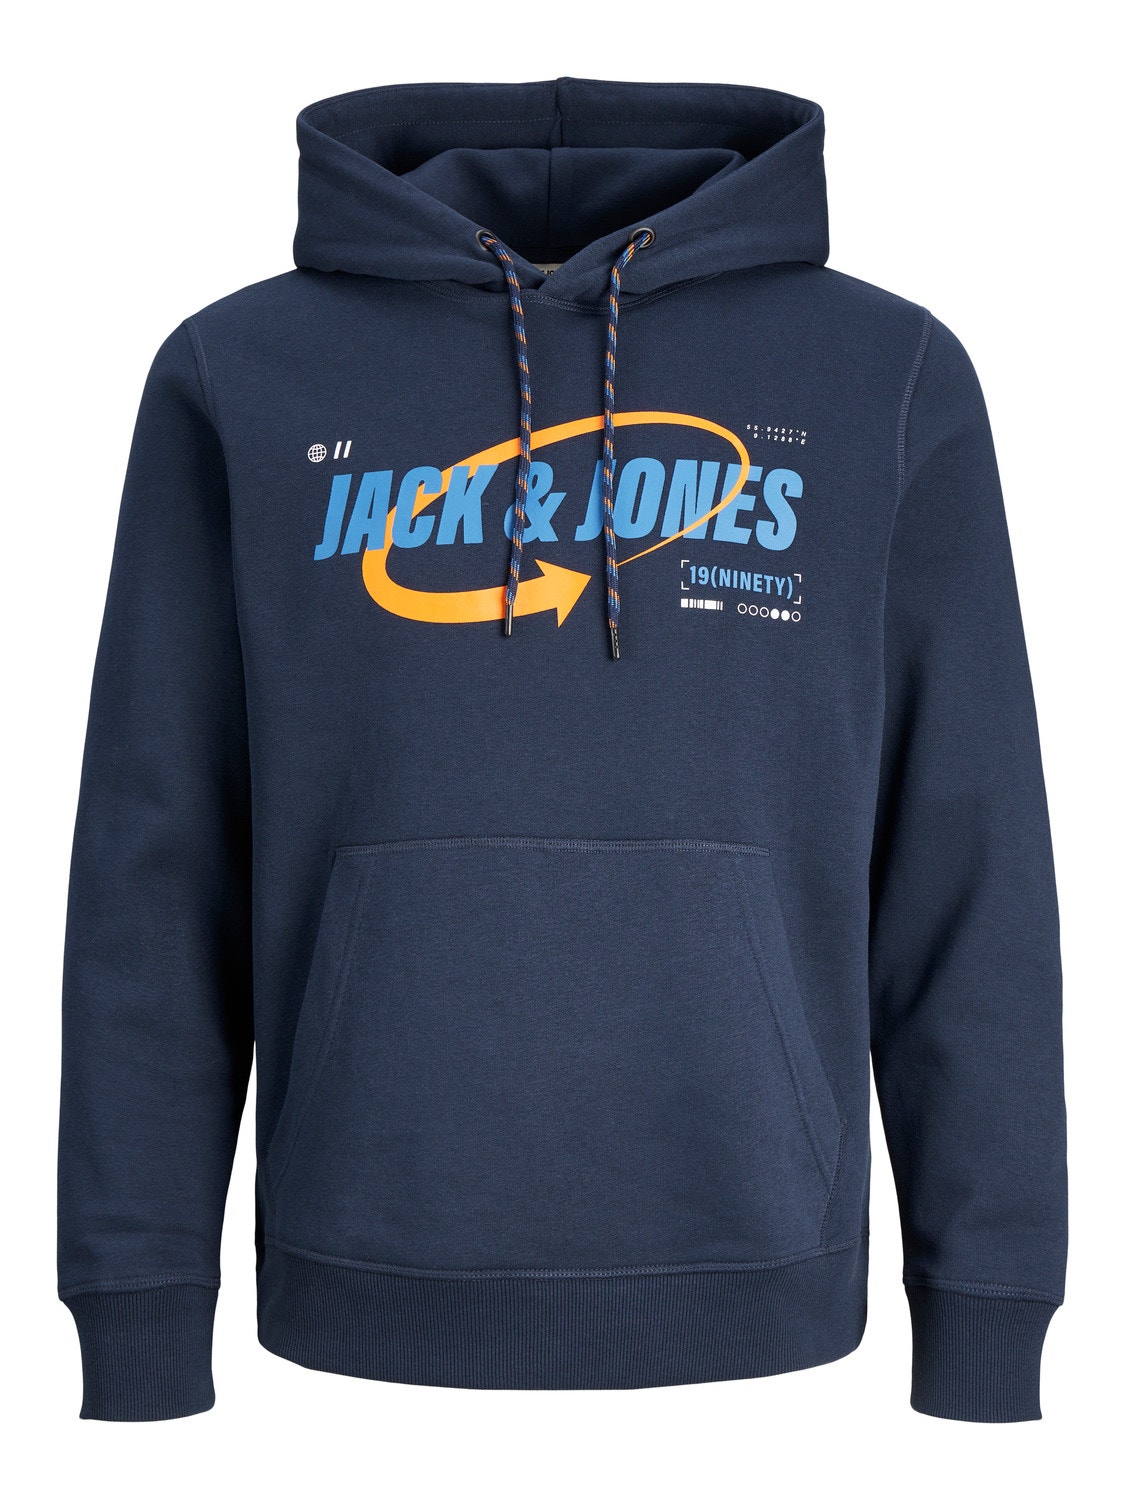 Jack & Jones Plus Size Printed Hoodie -Navy Blazer - 12252003